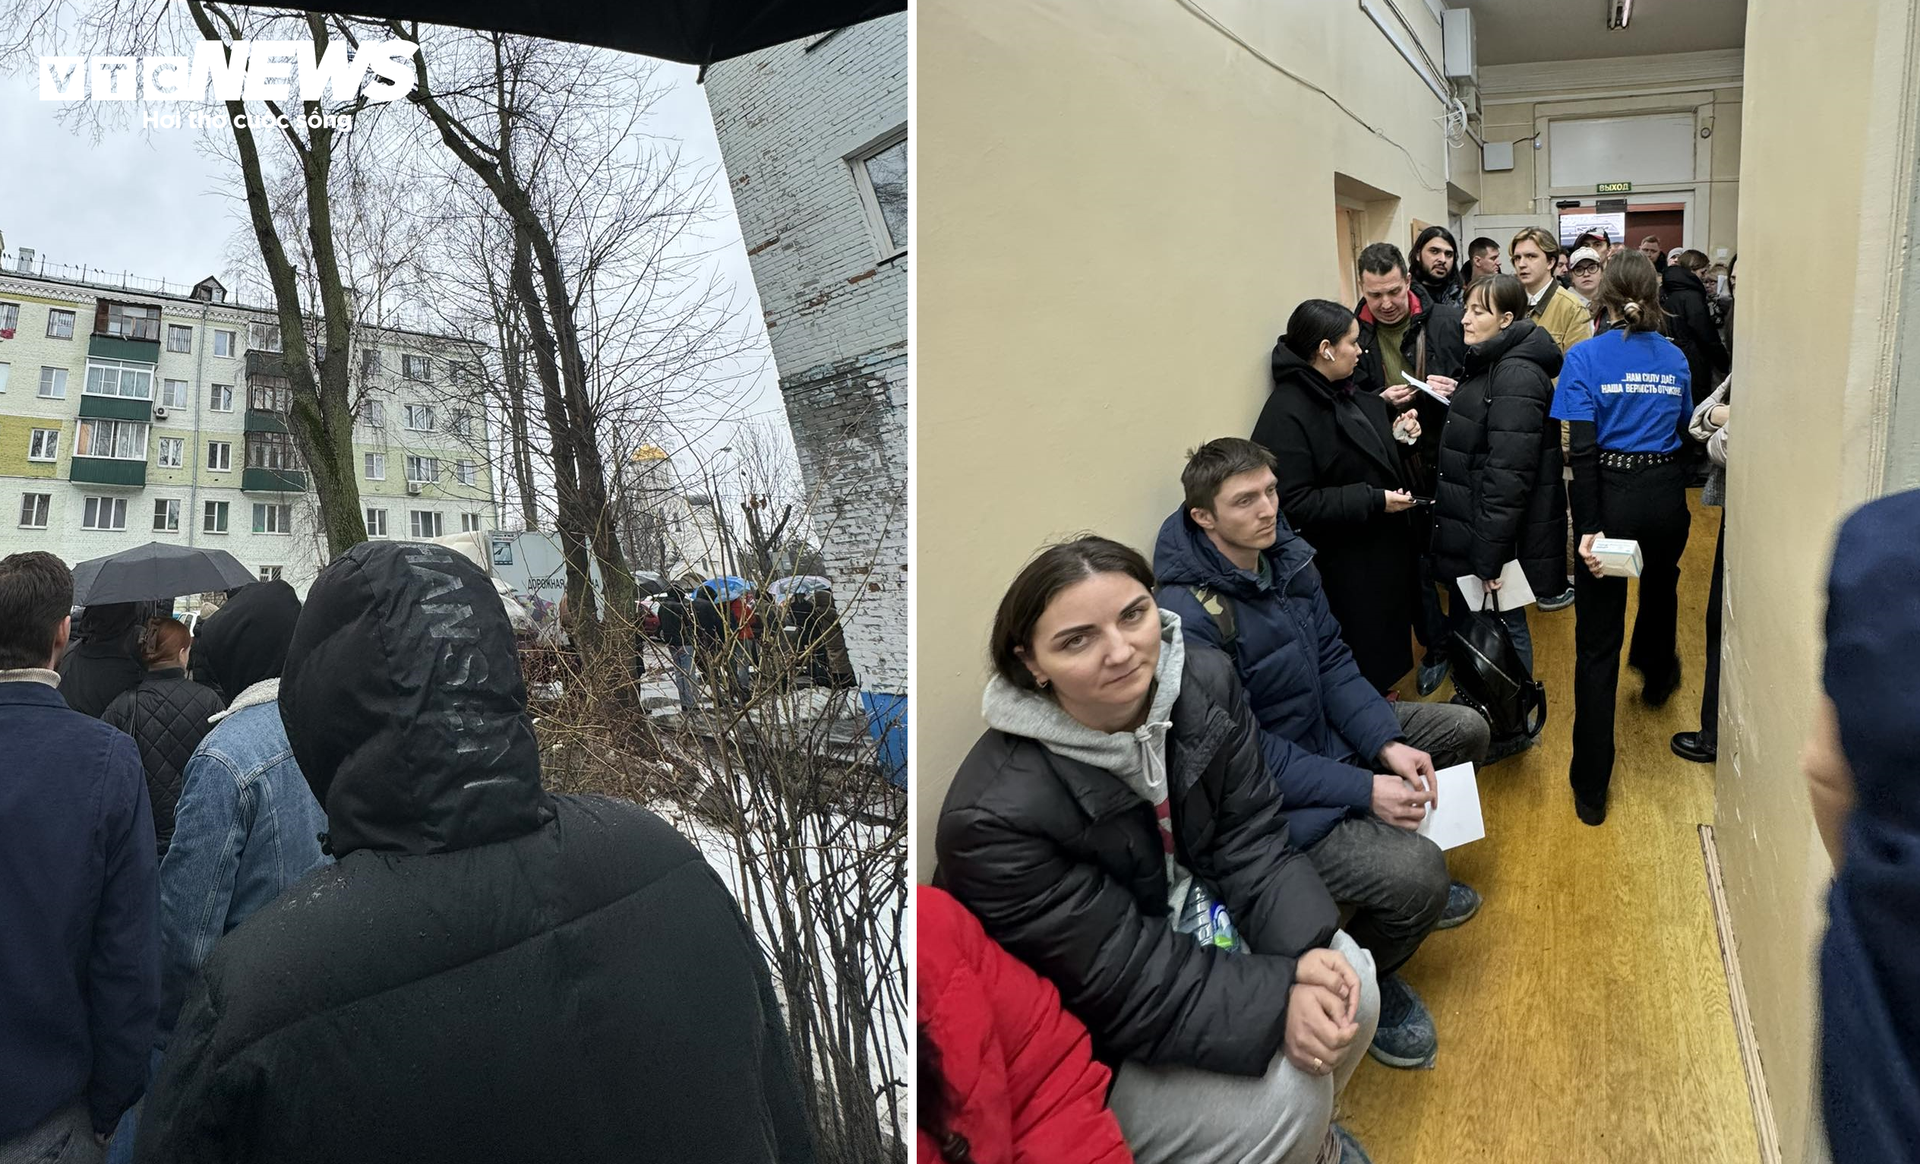 Bác sĩ Bảo cùng nhiều người dân Moskva bất chấp mưa rét sẵn sàng đợi hơn 2 tiếng để có thể hiến máu cứu các nạn nhân trong vụ tấn công khủng bố. (Ảnh nhân vật cung cấp)